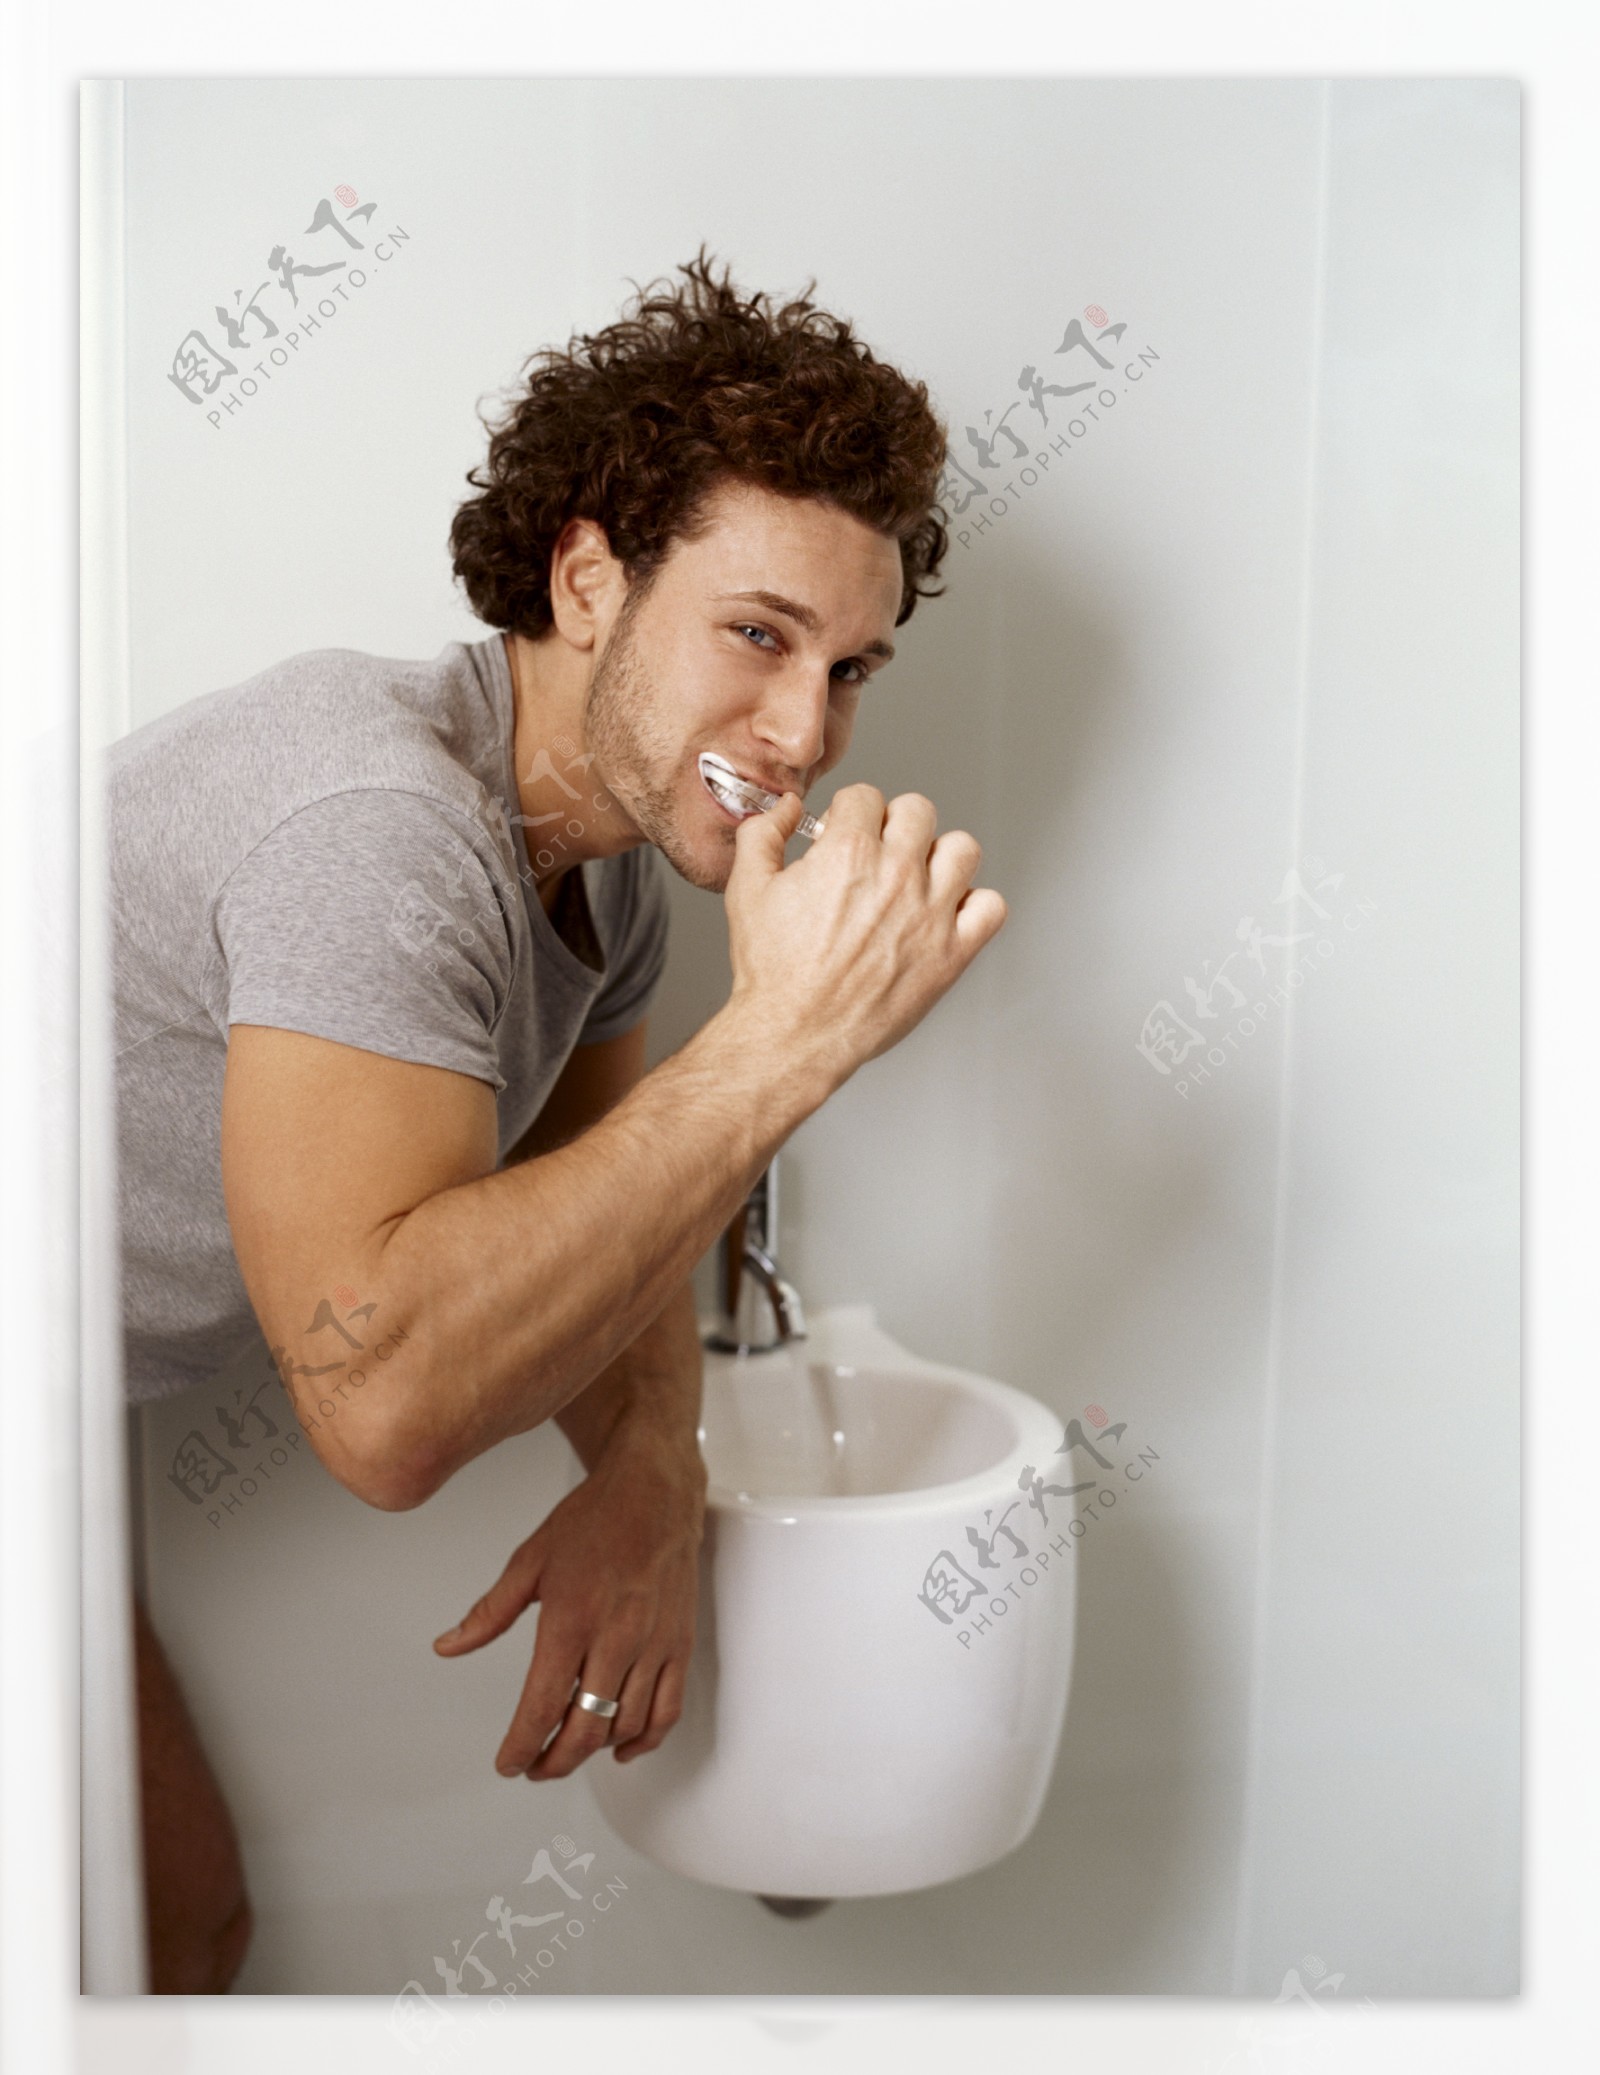 正在刷牙的男人图片